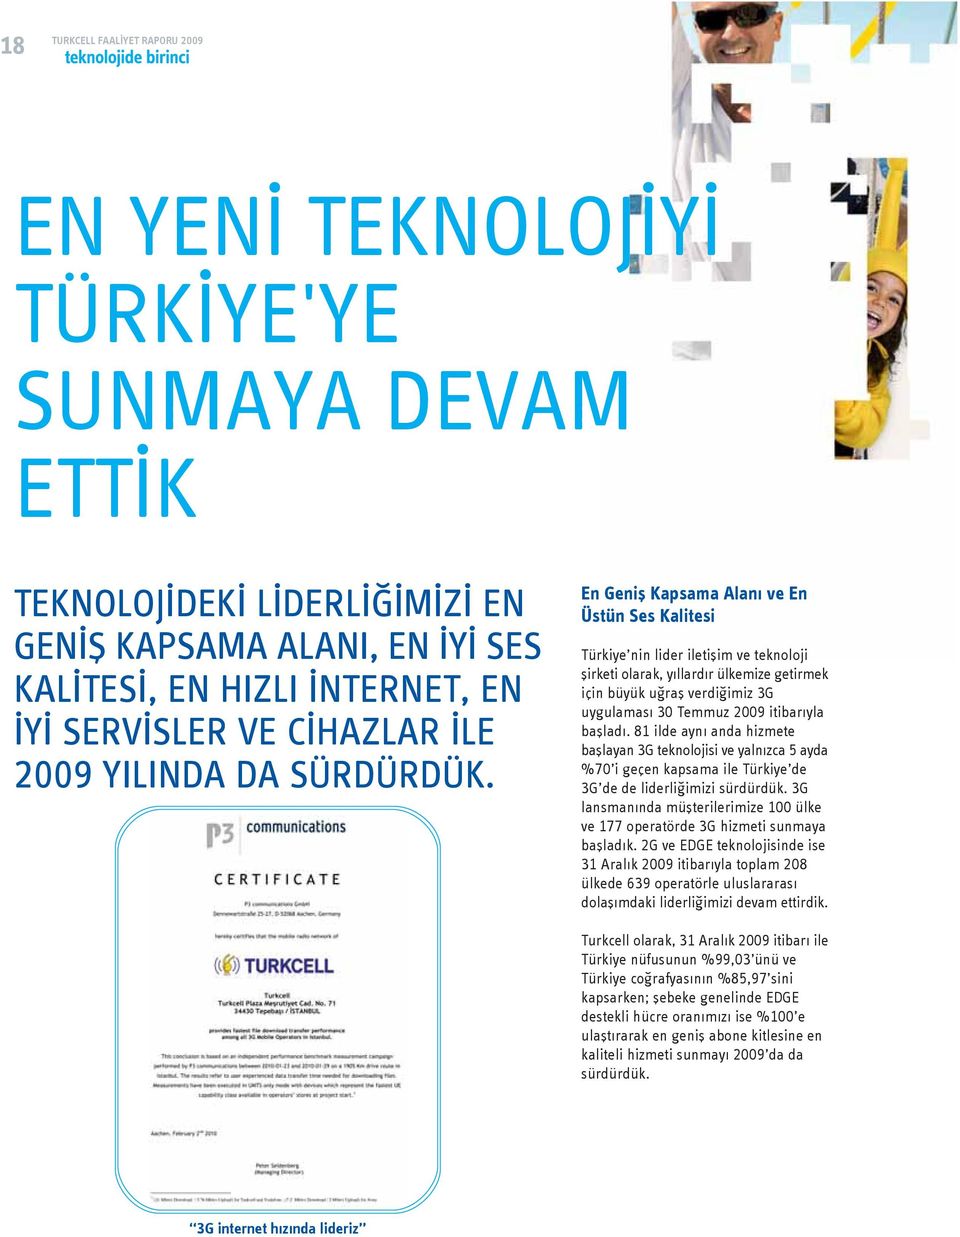 En Geniş Kapsama Alanı ve En Üstün Ses Kalitesi Türkiye nin lider iletişim ve teknoloji şirketi olarak, yıllardır ülkemize getirmek için büyük uğraş verdiğimiz 3G uygulaması 30 Temmuz 2009 itibarıyla